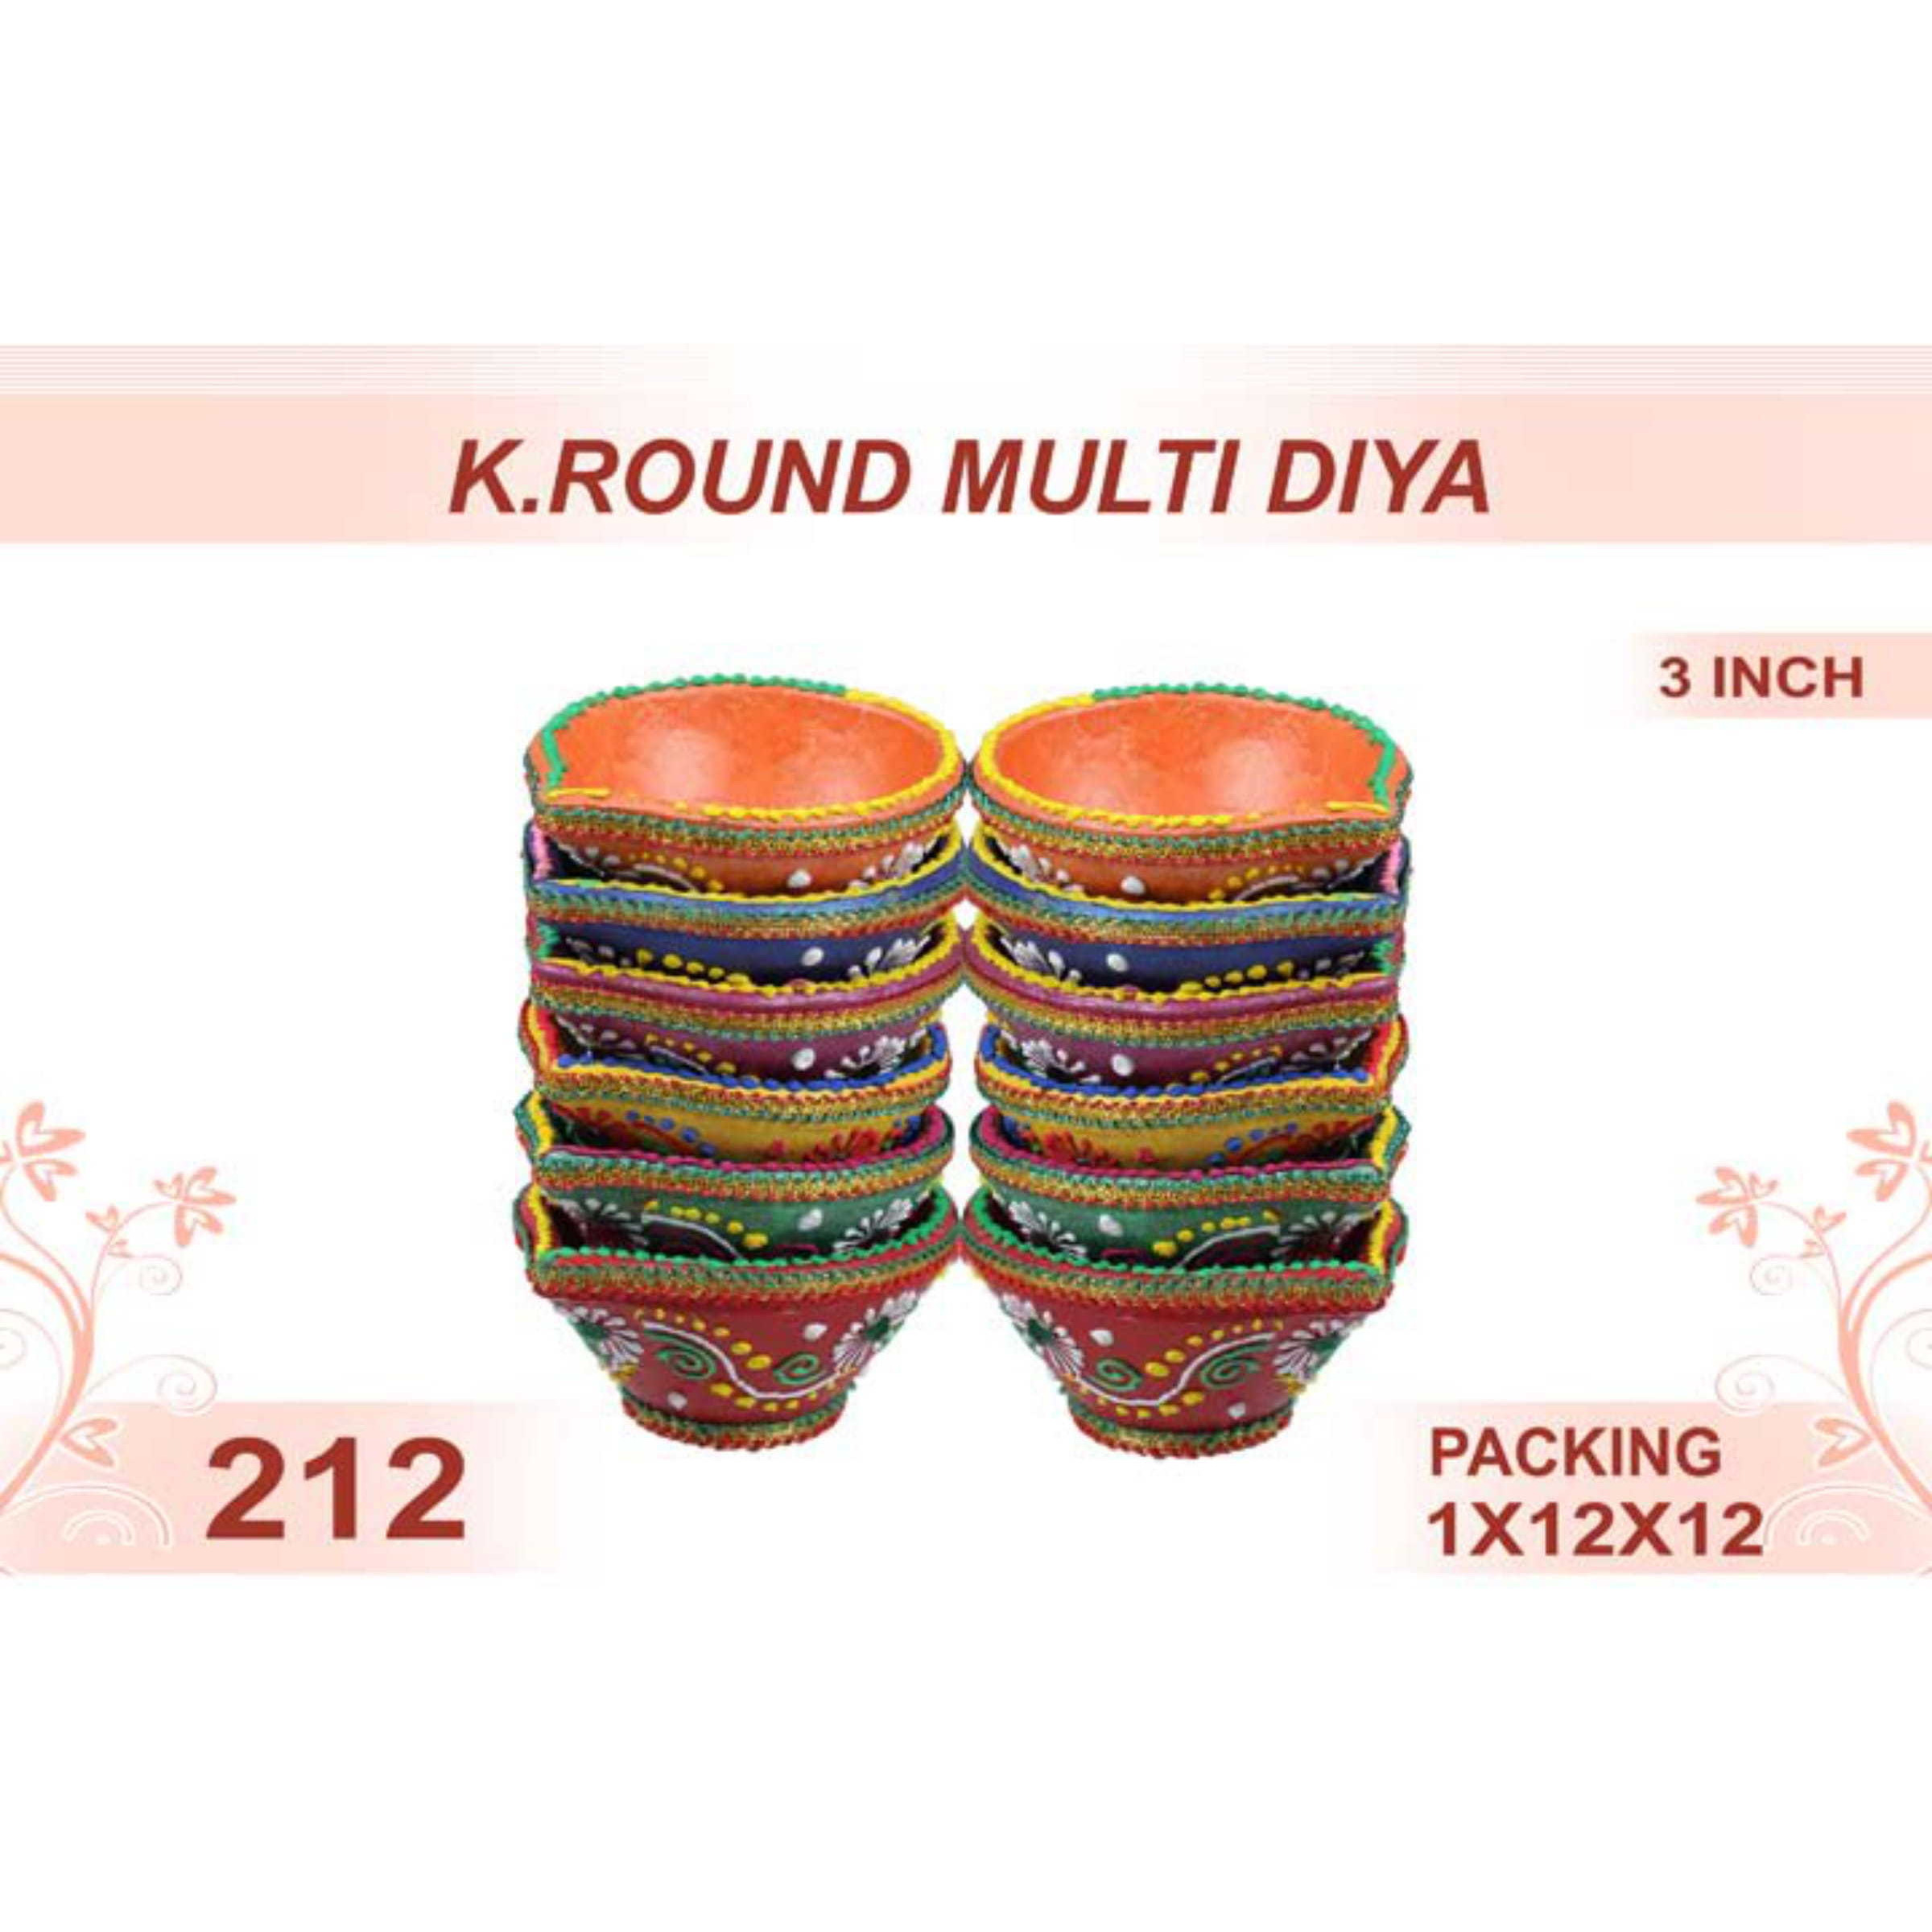 K. Round Multi Diya 12pc 3inch #212